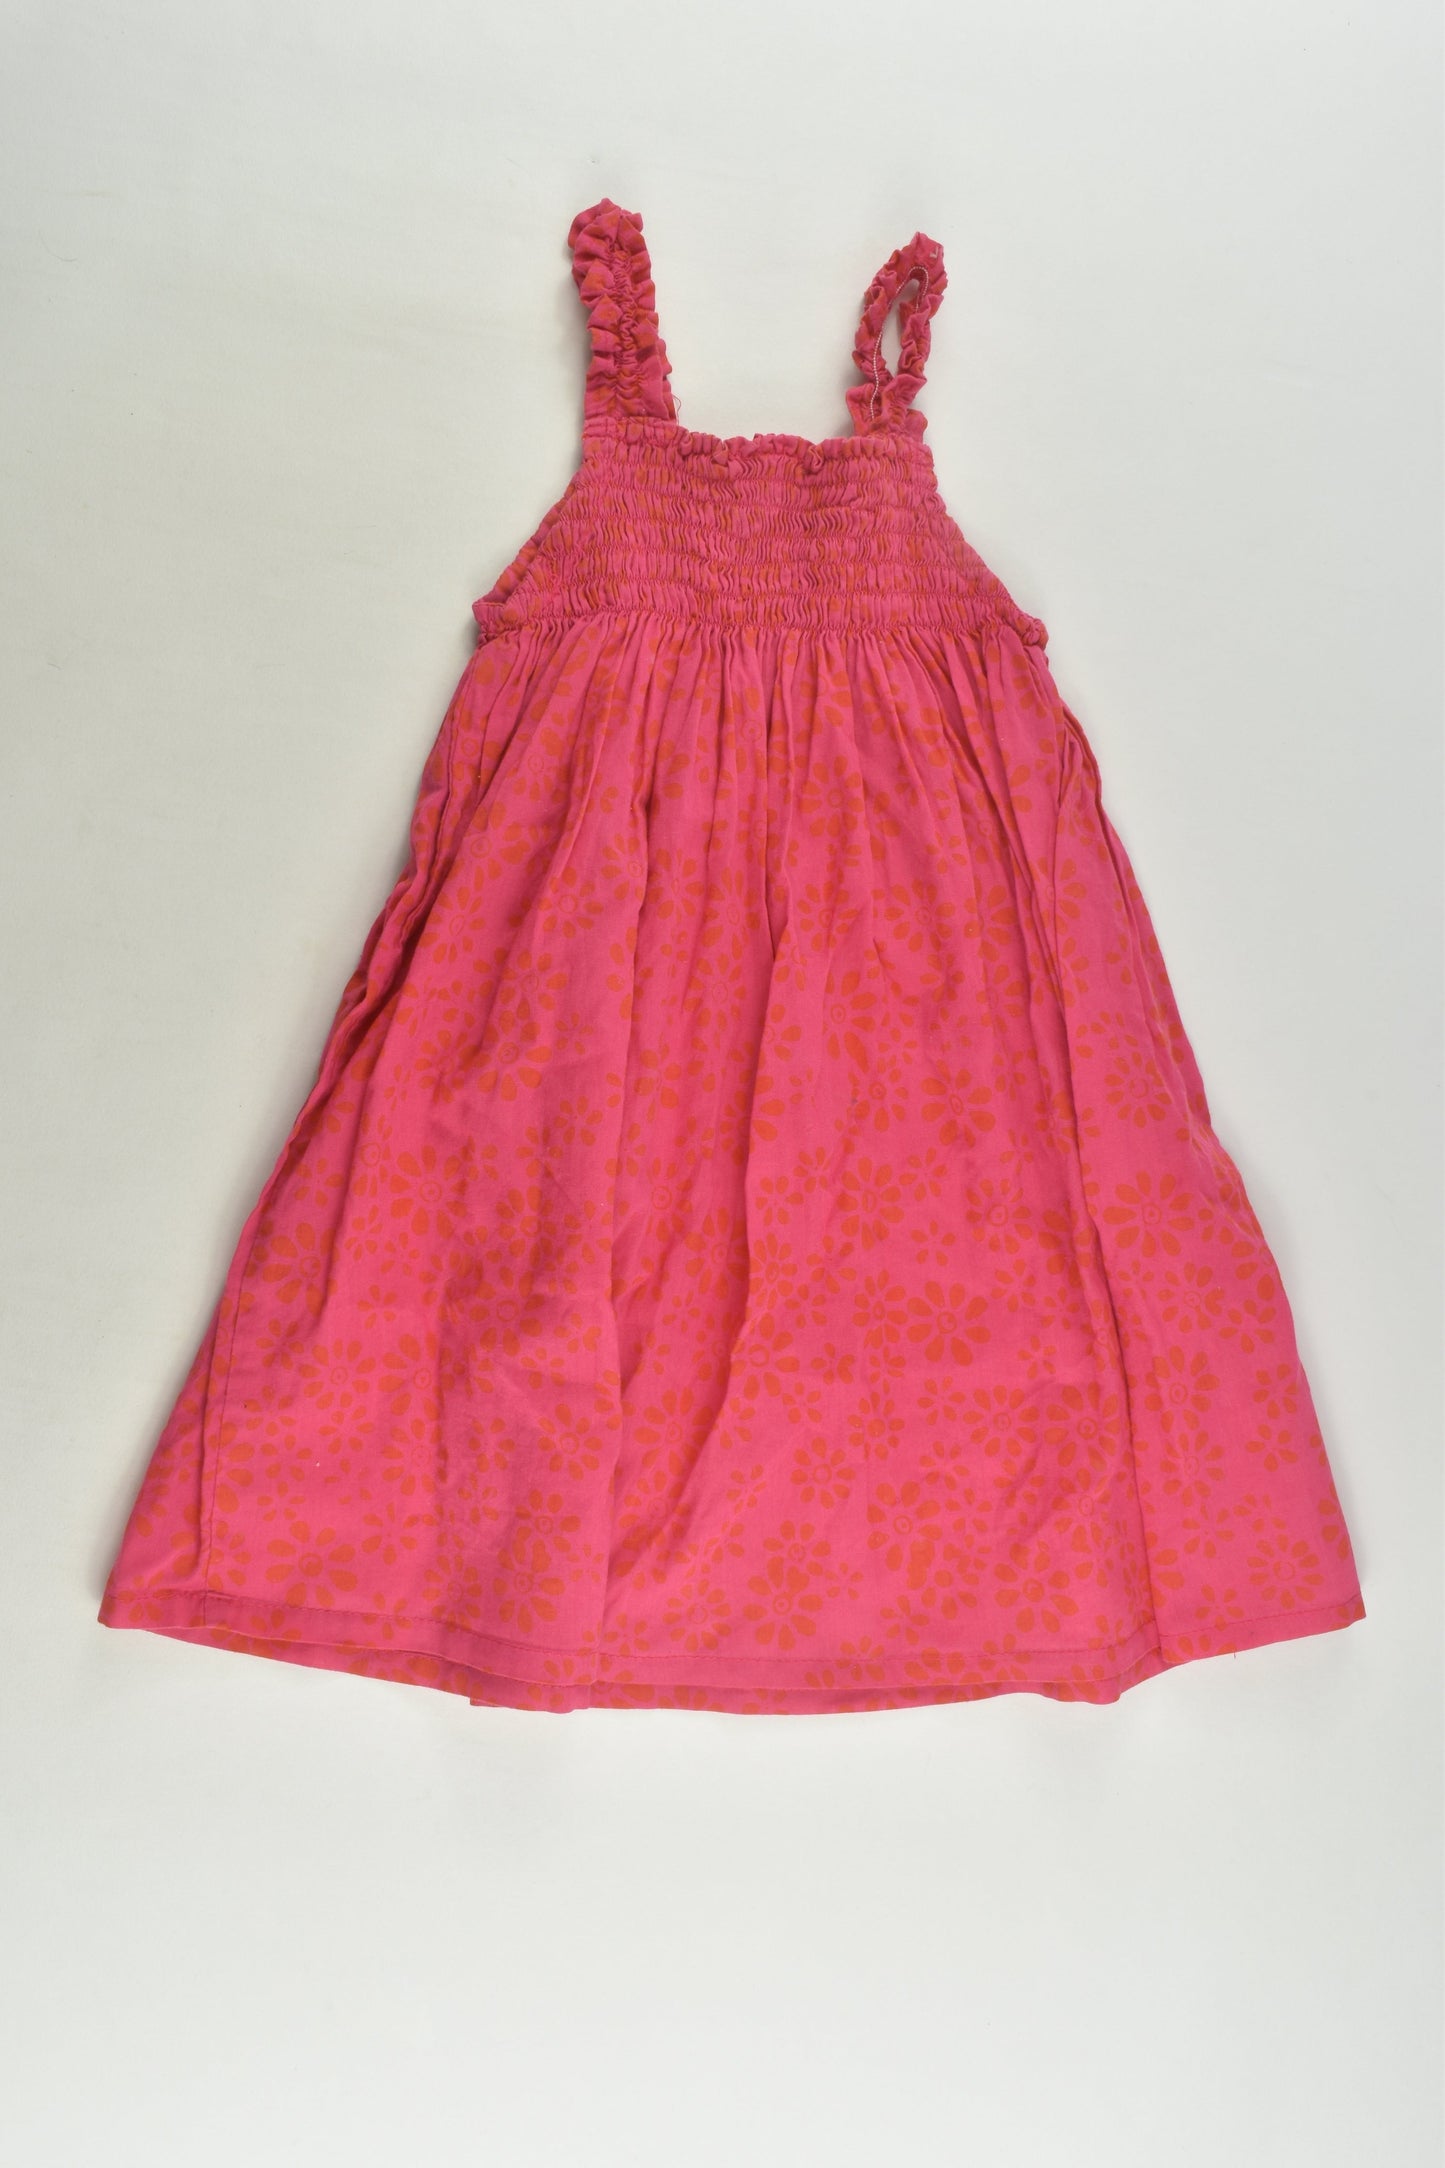 Handmade Size 1 (18 months) Dress